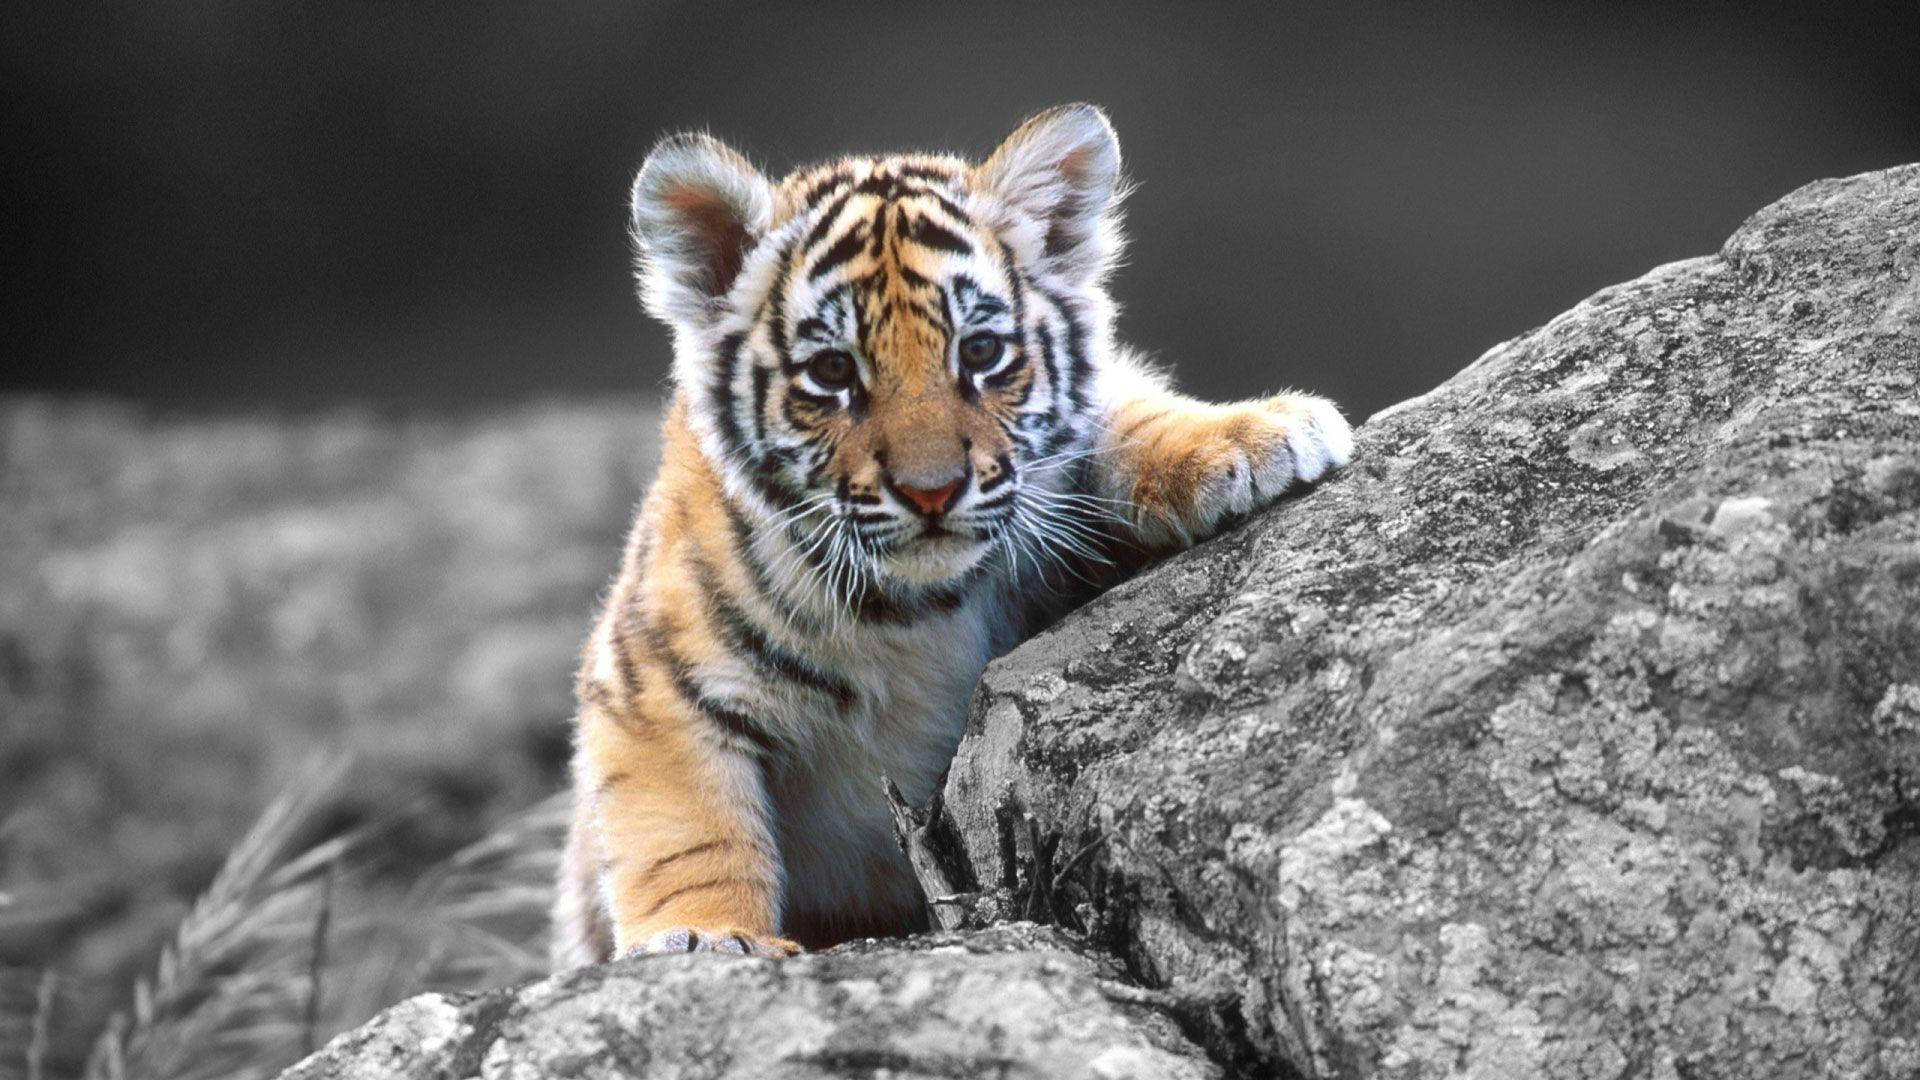 Baby Tiger At Rocks